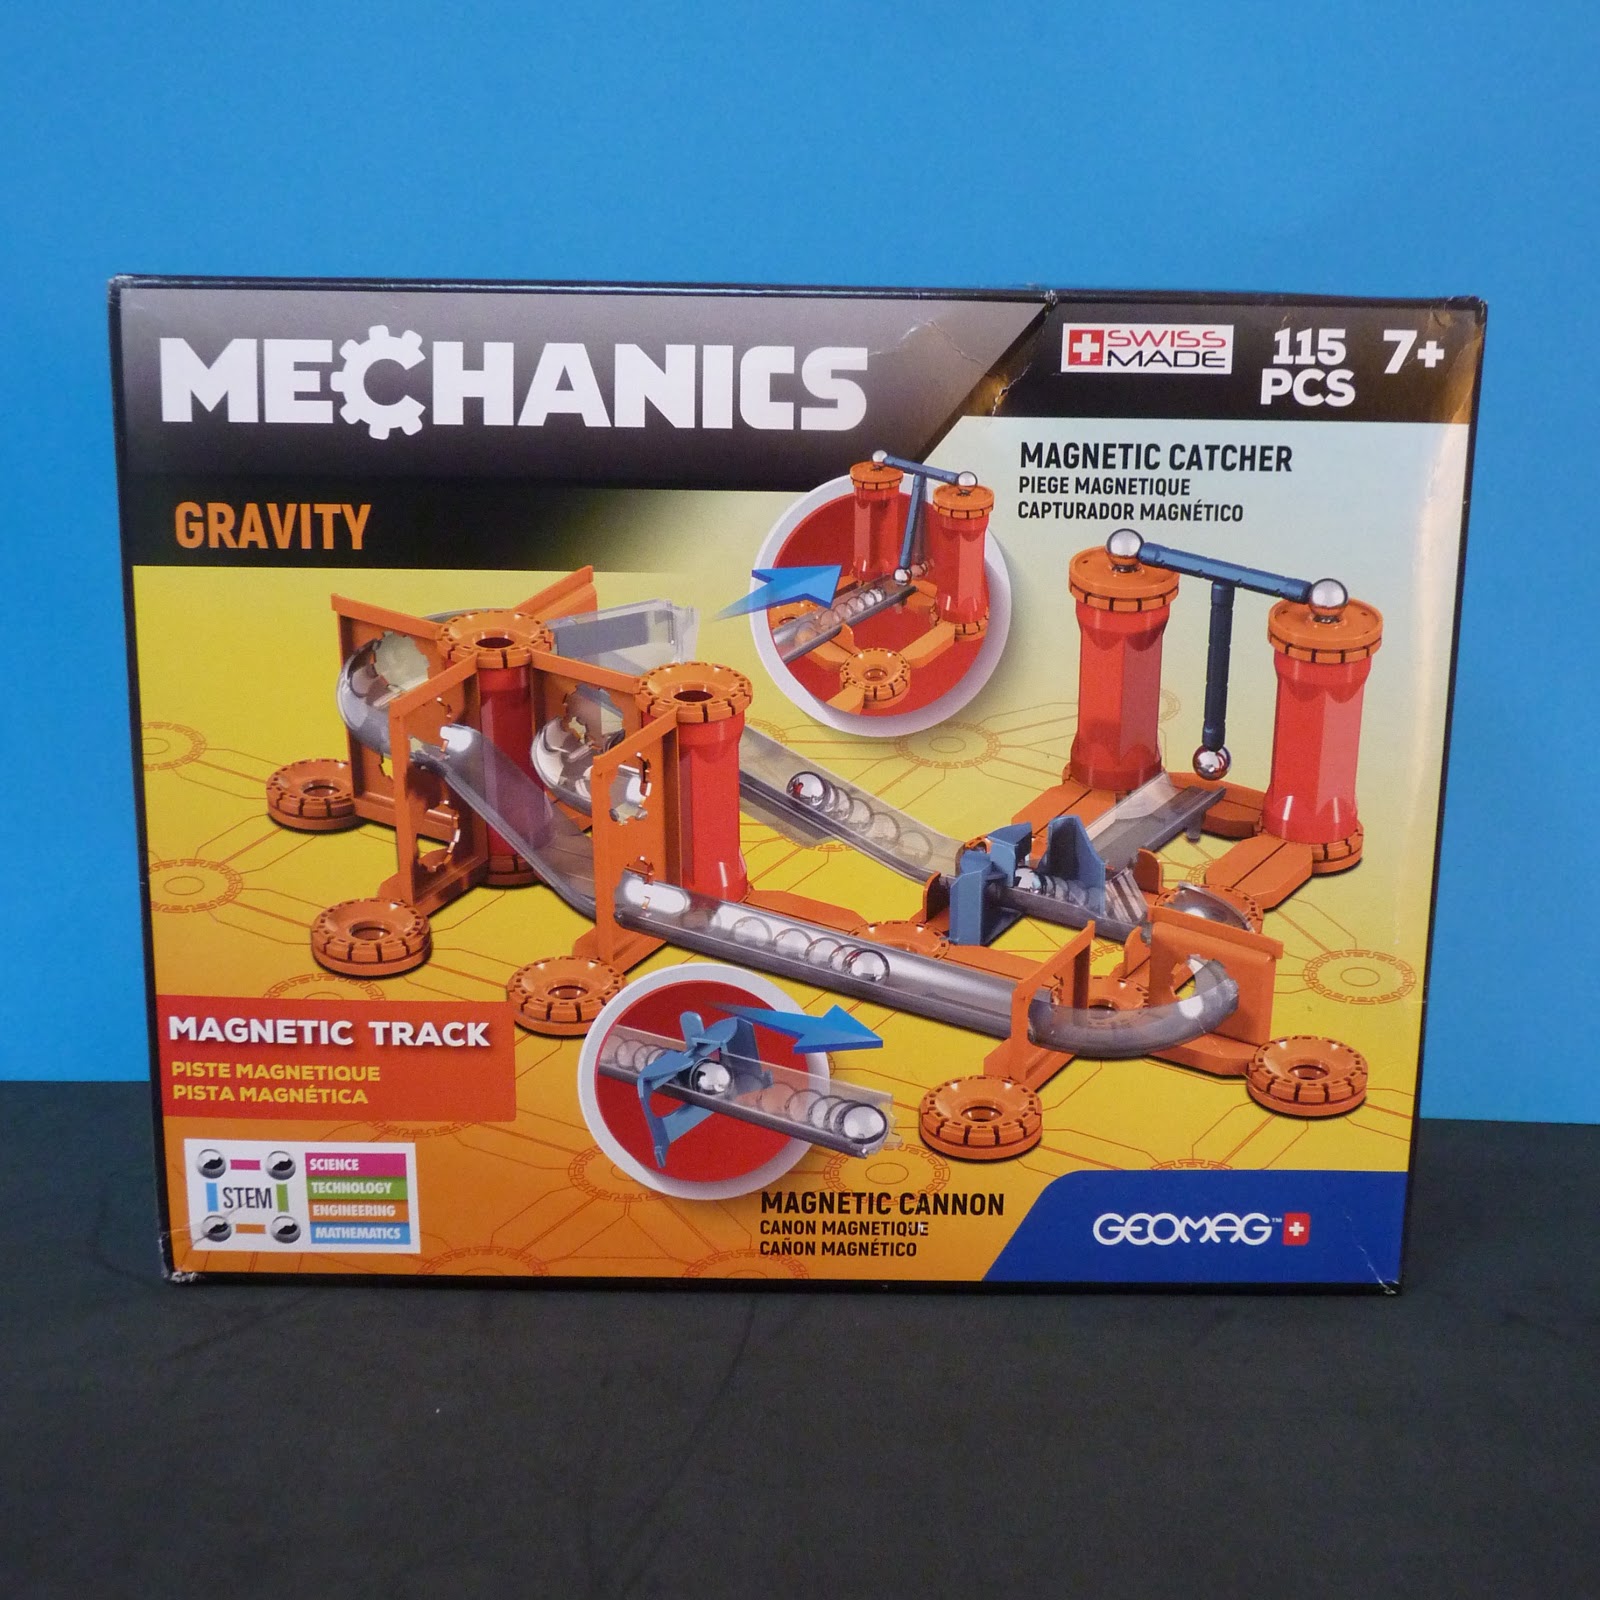 GMV00 Multicolore Gravity 67 pcs Jeux éducatifs Jouet pour Enfants dès 8 Ans Construction magnétique Geomag Mechanics